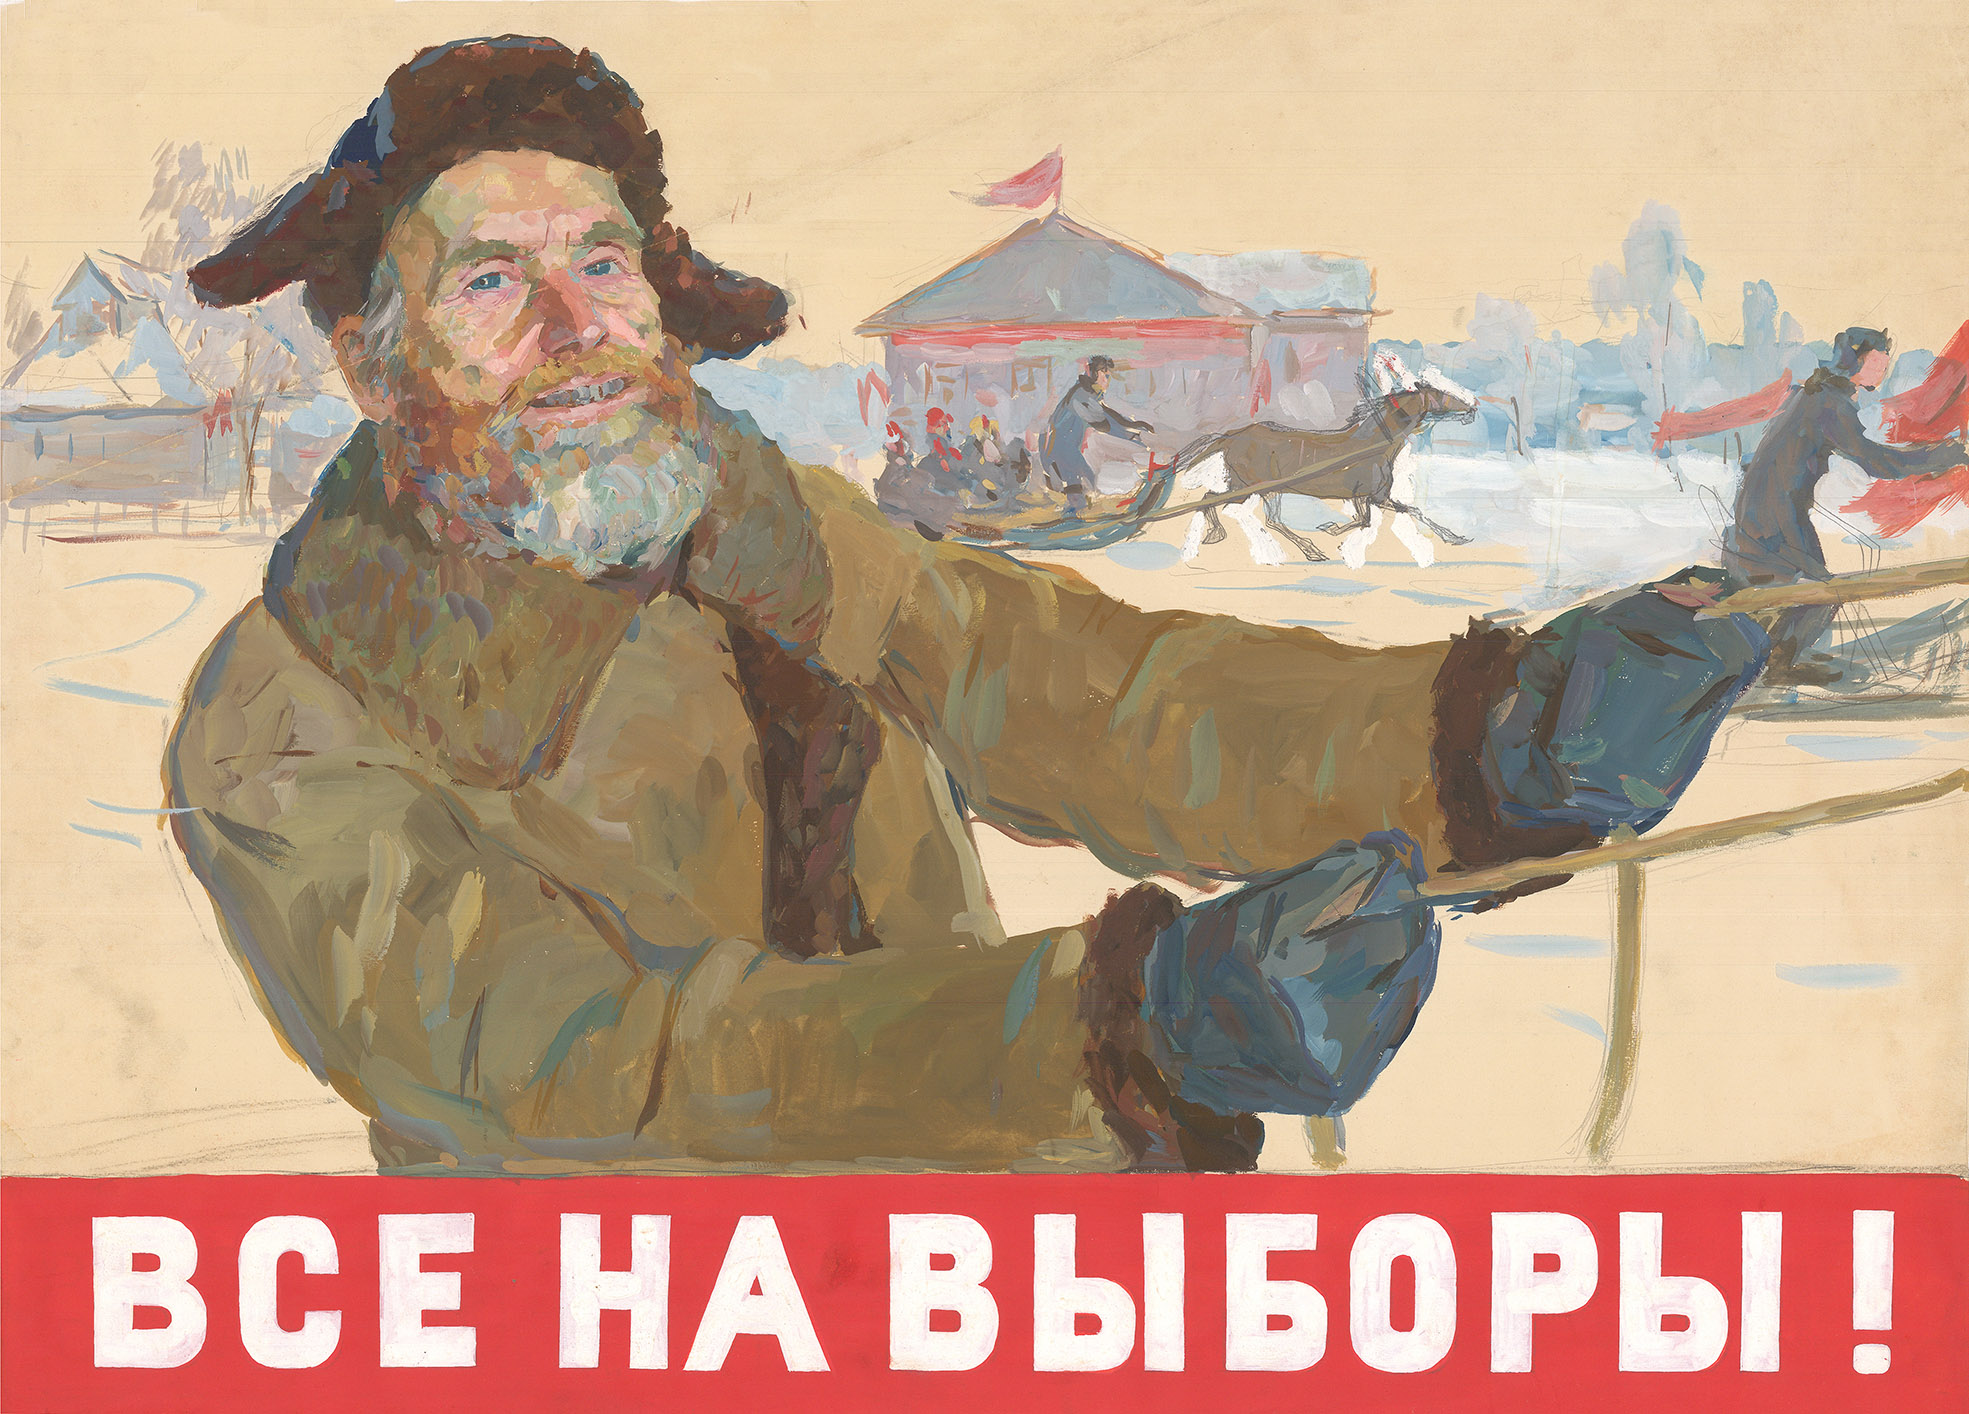 Пародия на выборы. Все на выборы плакат. Советские плакаты. Все на выборы плакат СССР. Советские предвыборные плакаты.